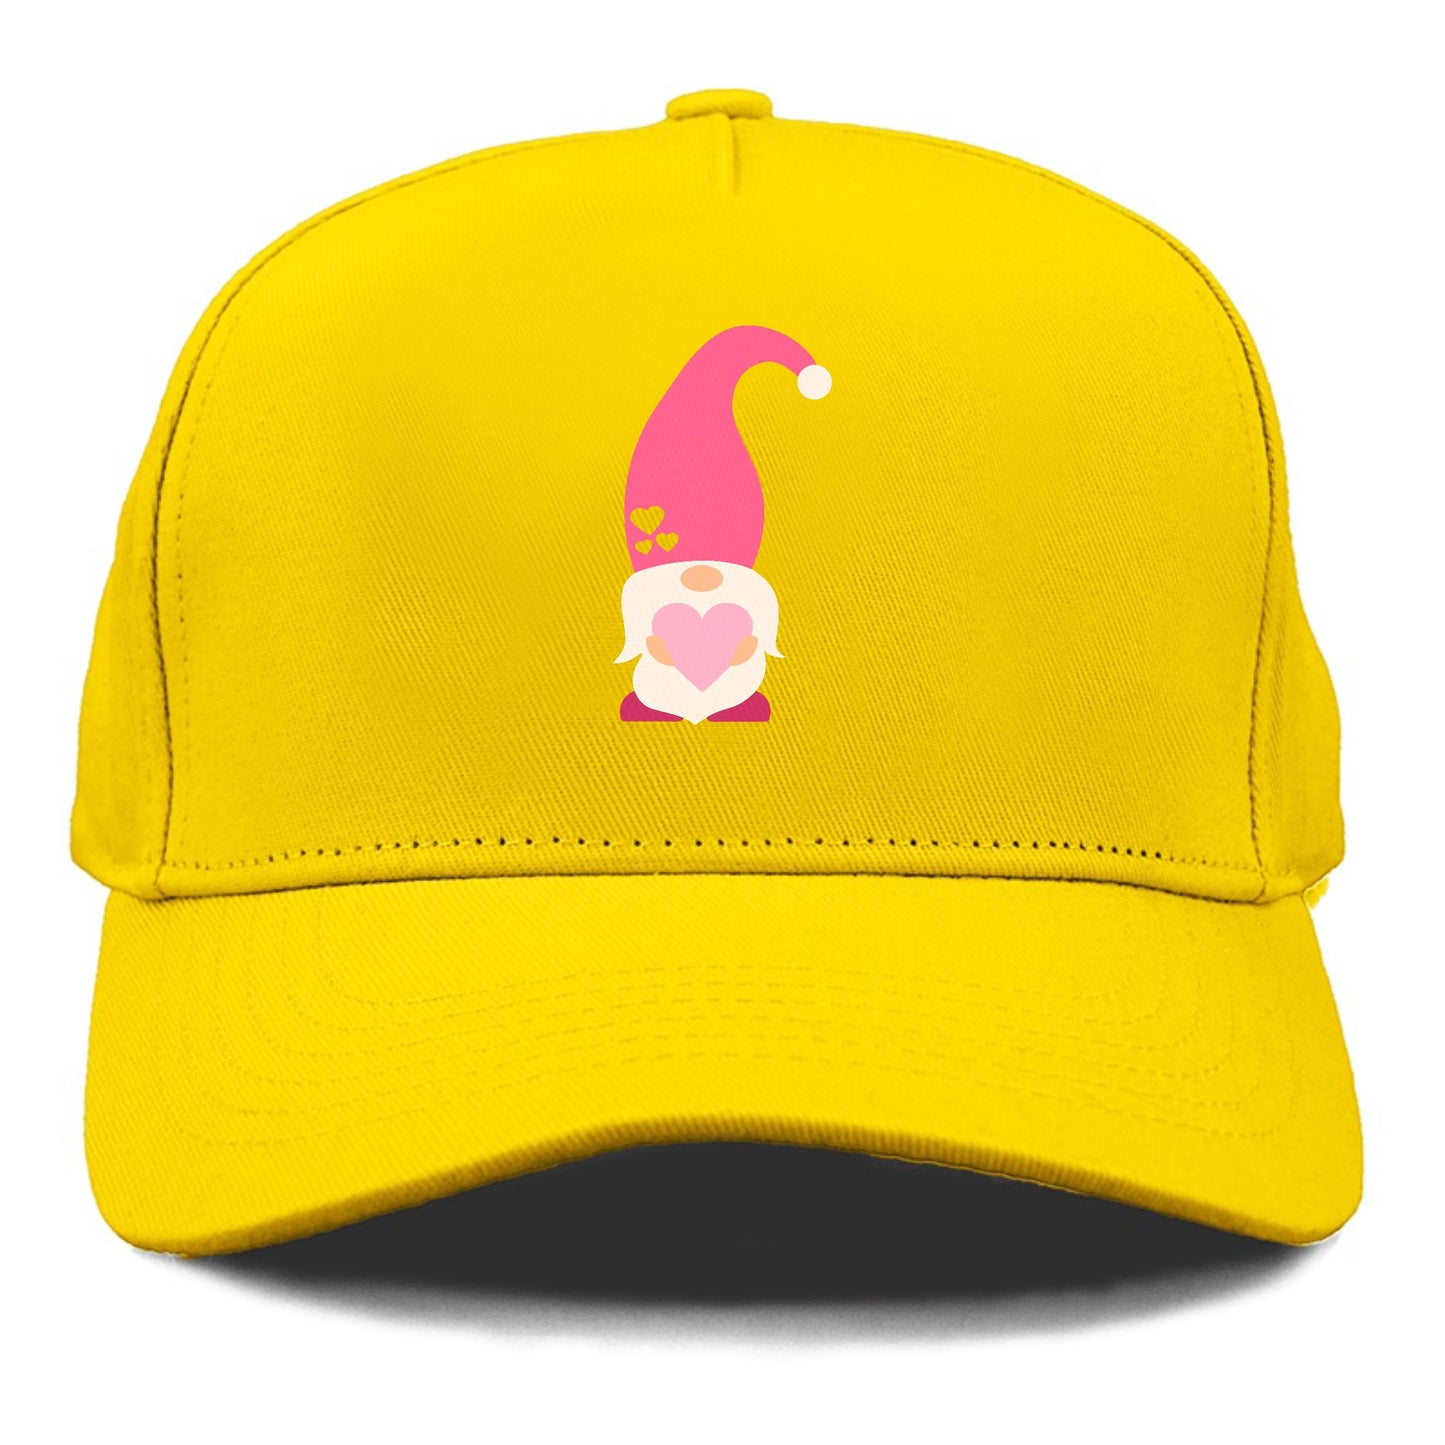 Valentine's dwarf 9 Hat